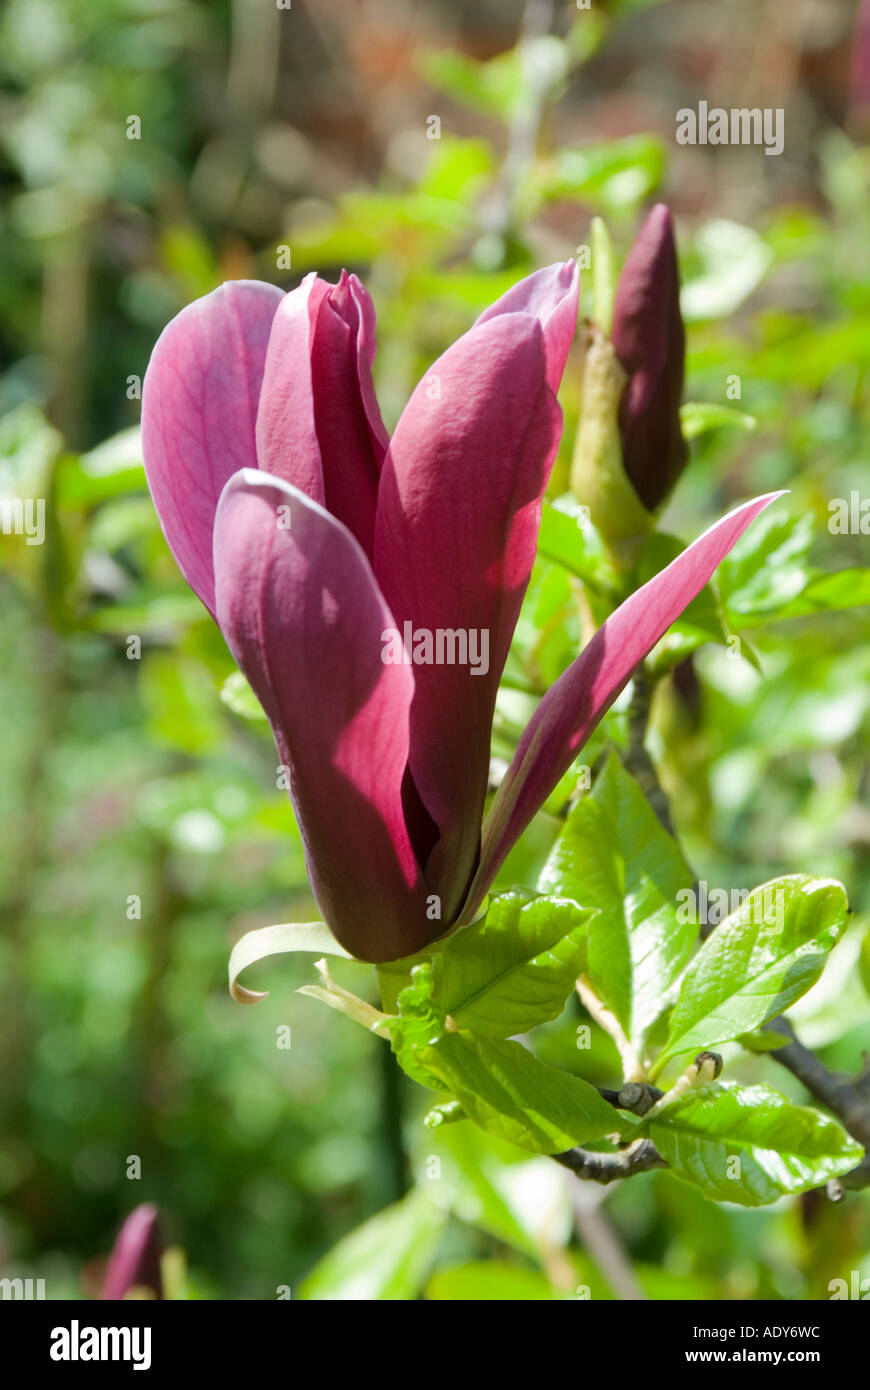 Magnolia purple liliflora Stock Photo